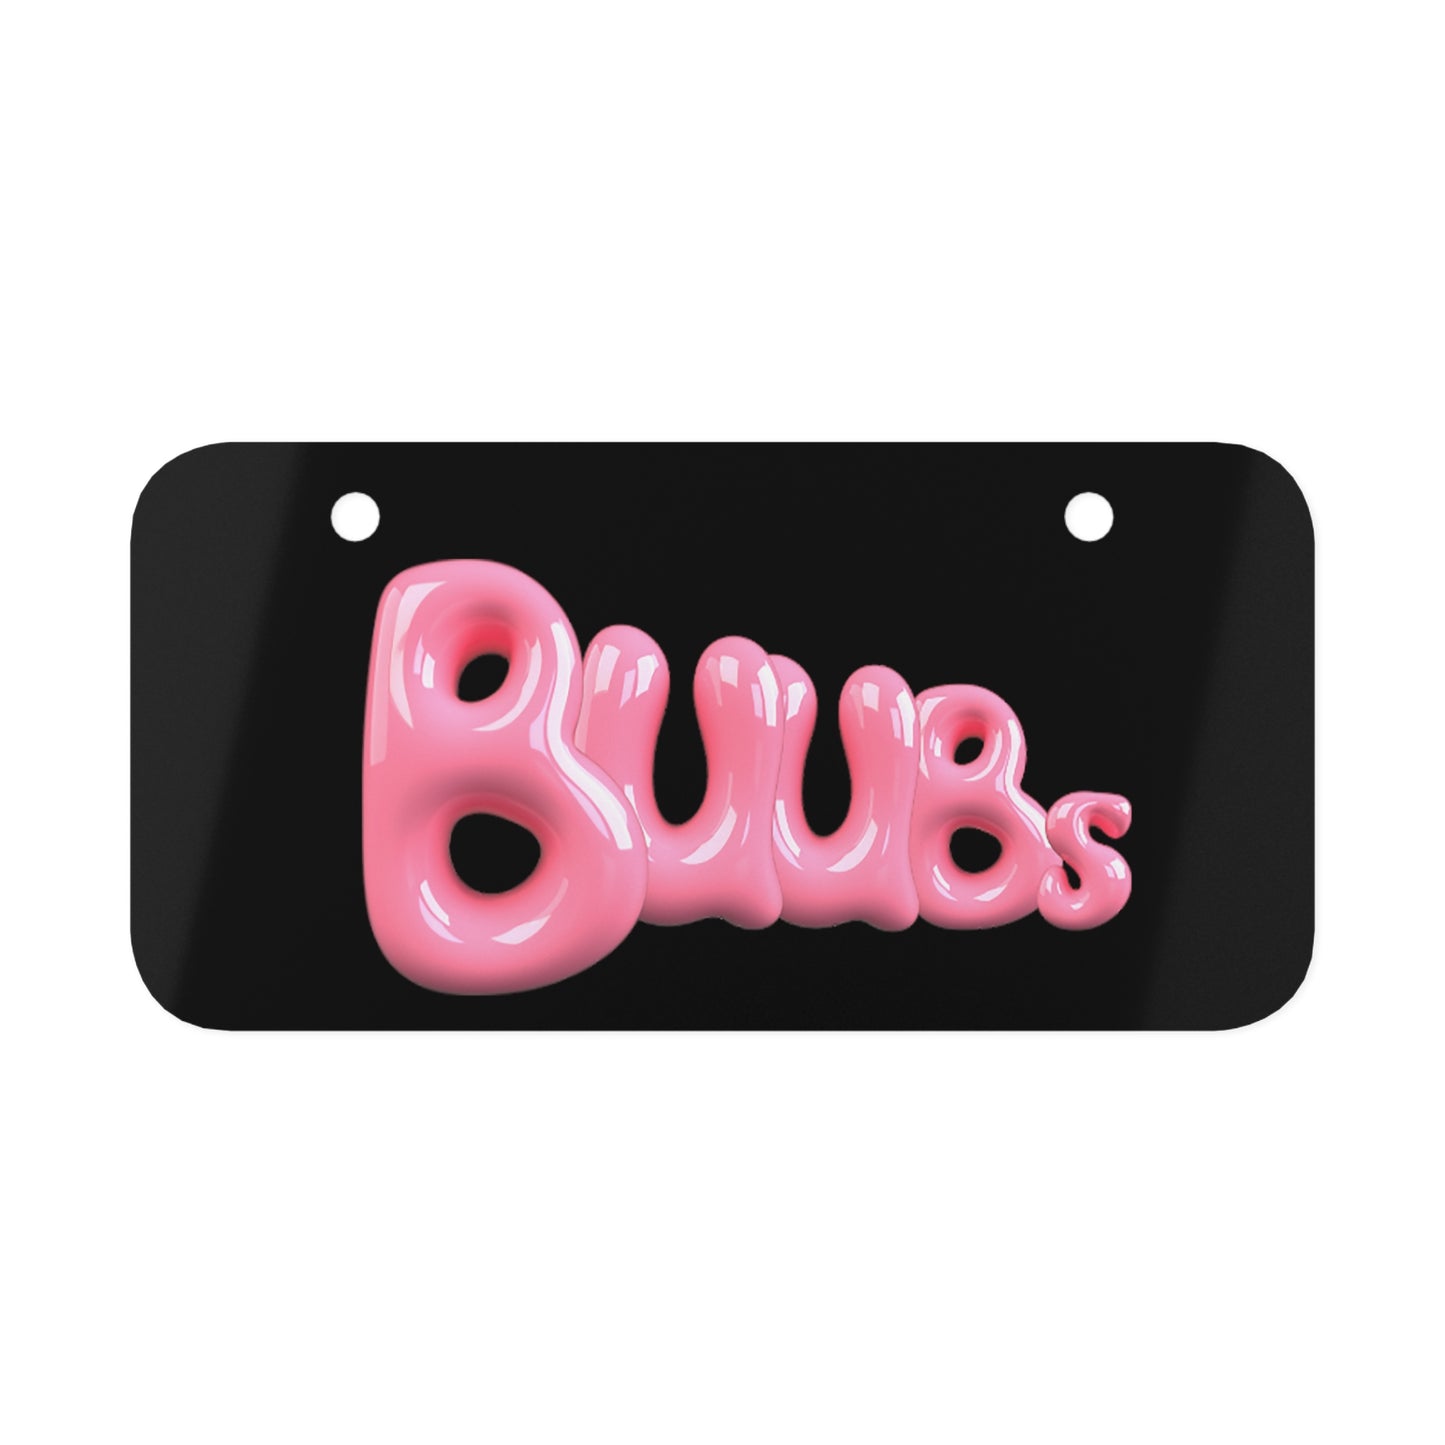 Juucie | "BuuBs" Mini License Plate - Juucie